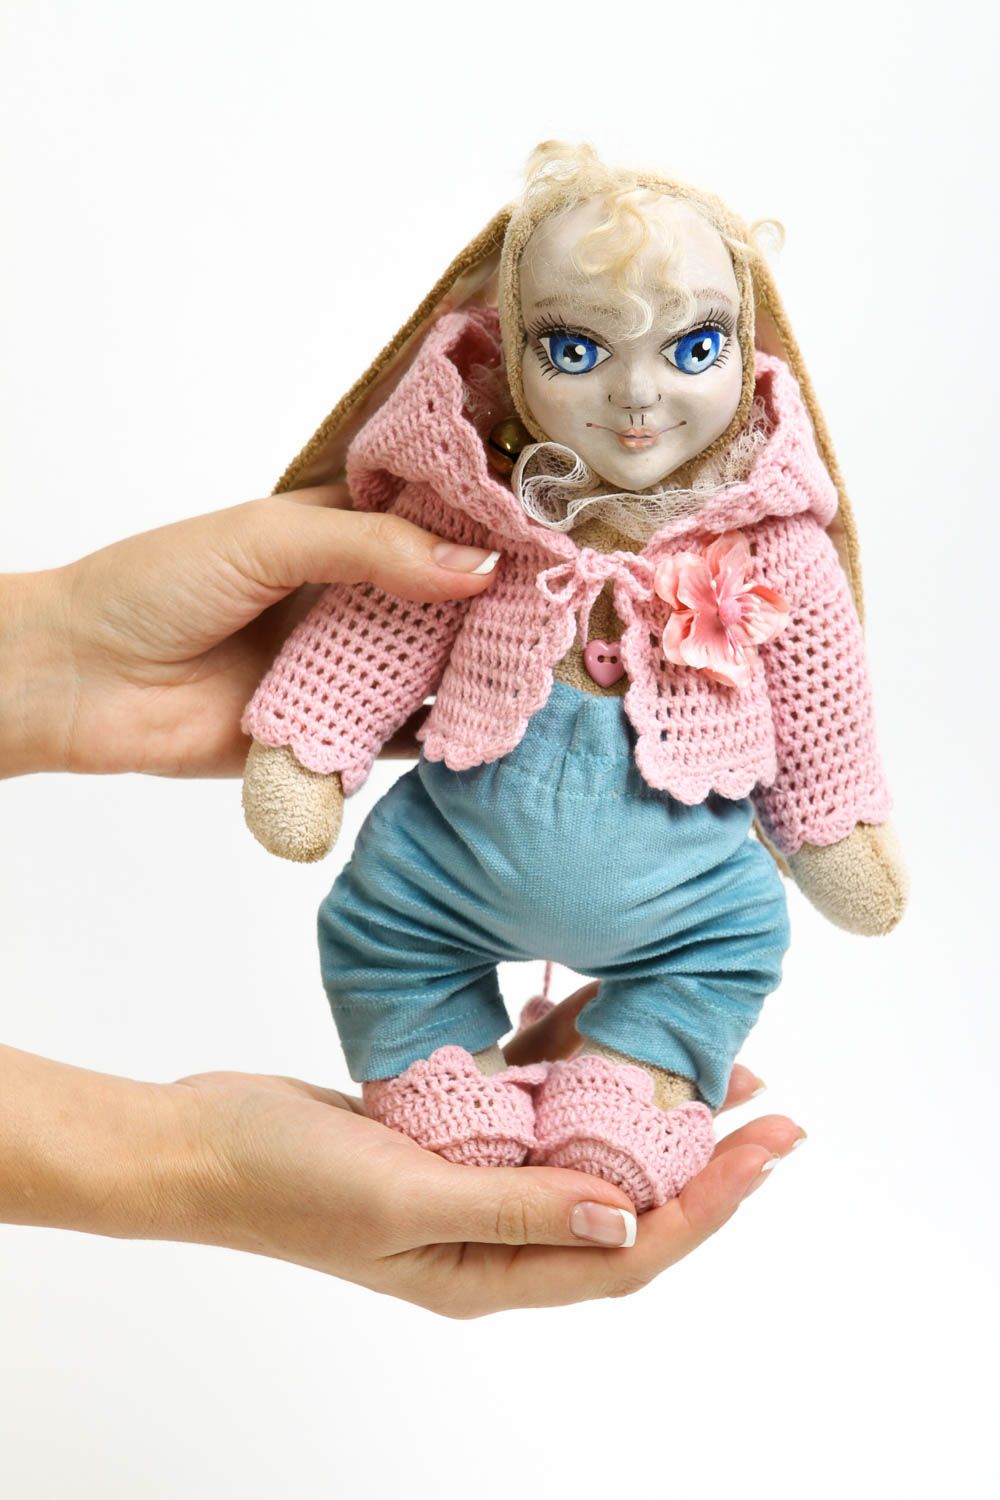 Кукла ручной работы кукла из ткани микровельвета авторская кукла с ушками фото 5